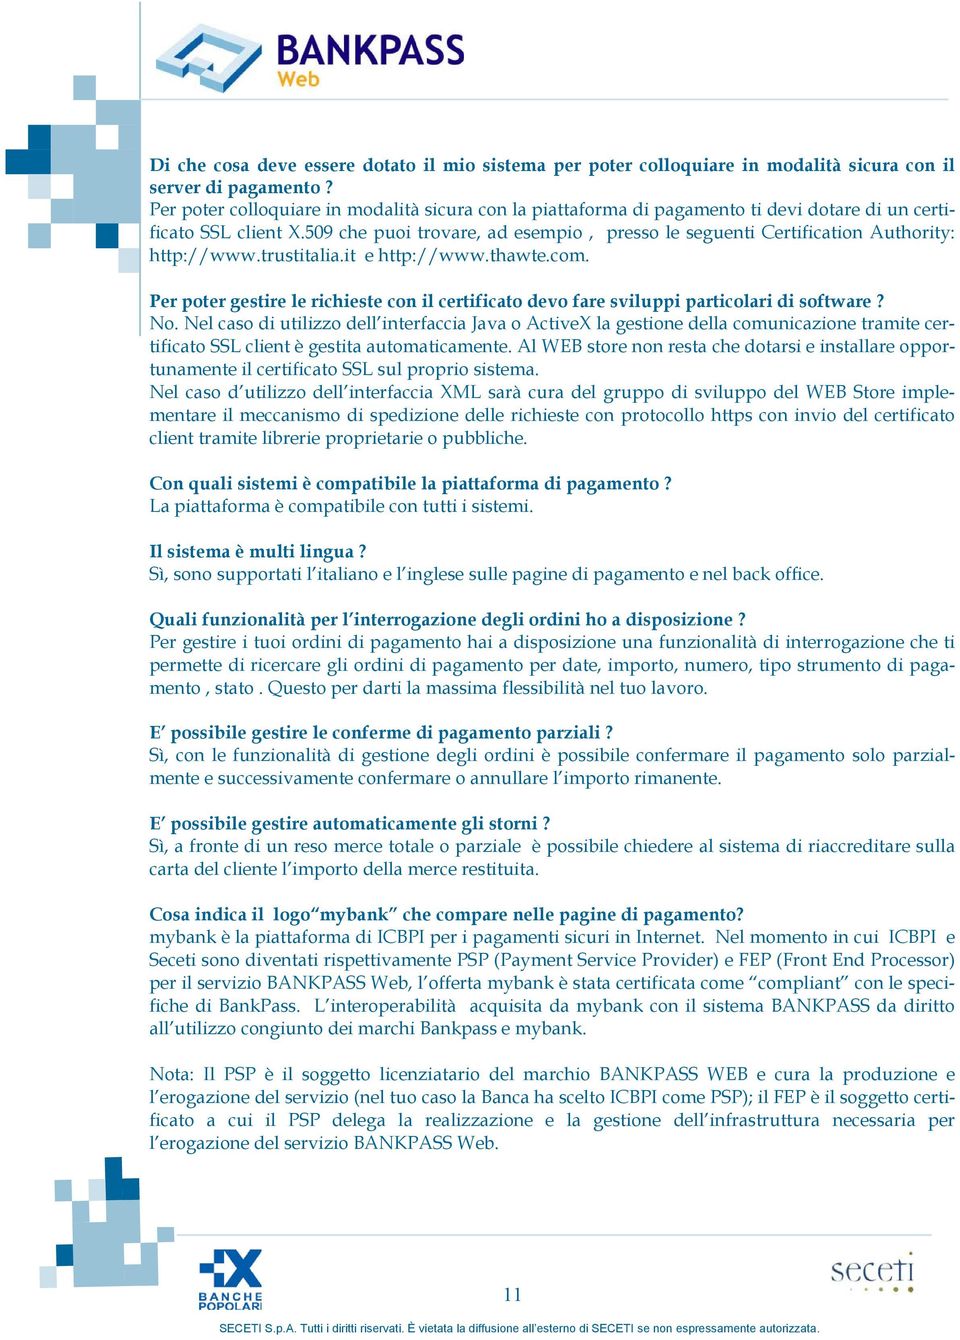 509 che puoi trovare, ad esempio, presso le seguenti Certification Authority: http://www.trustitalia.it e http://www.thawte.com.